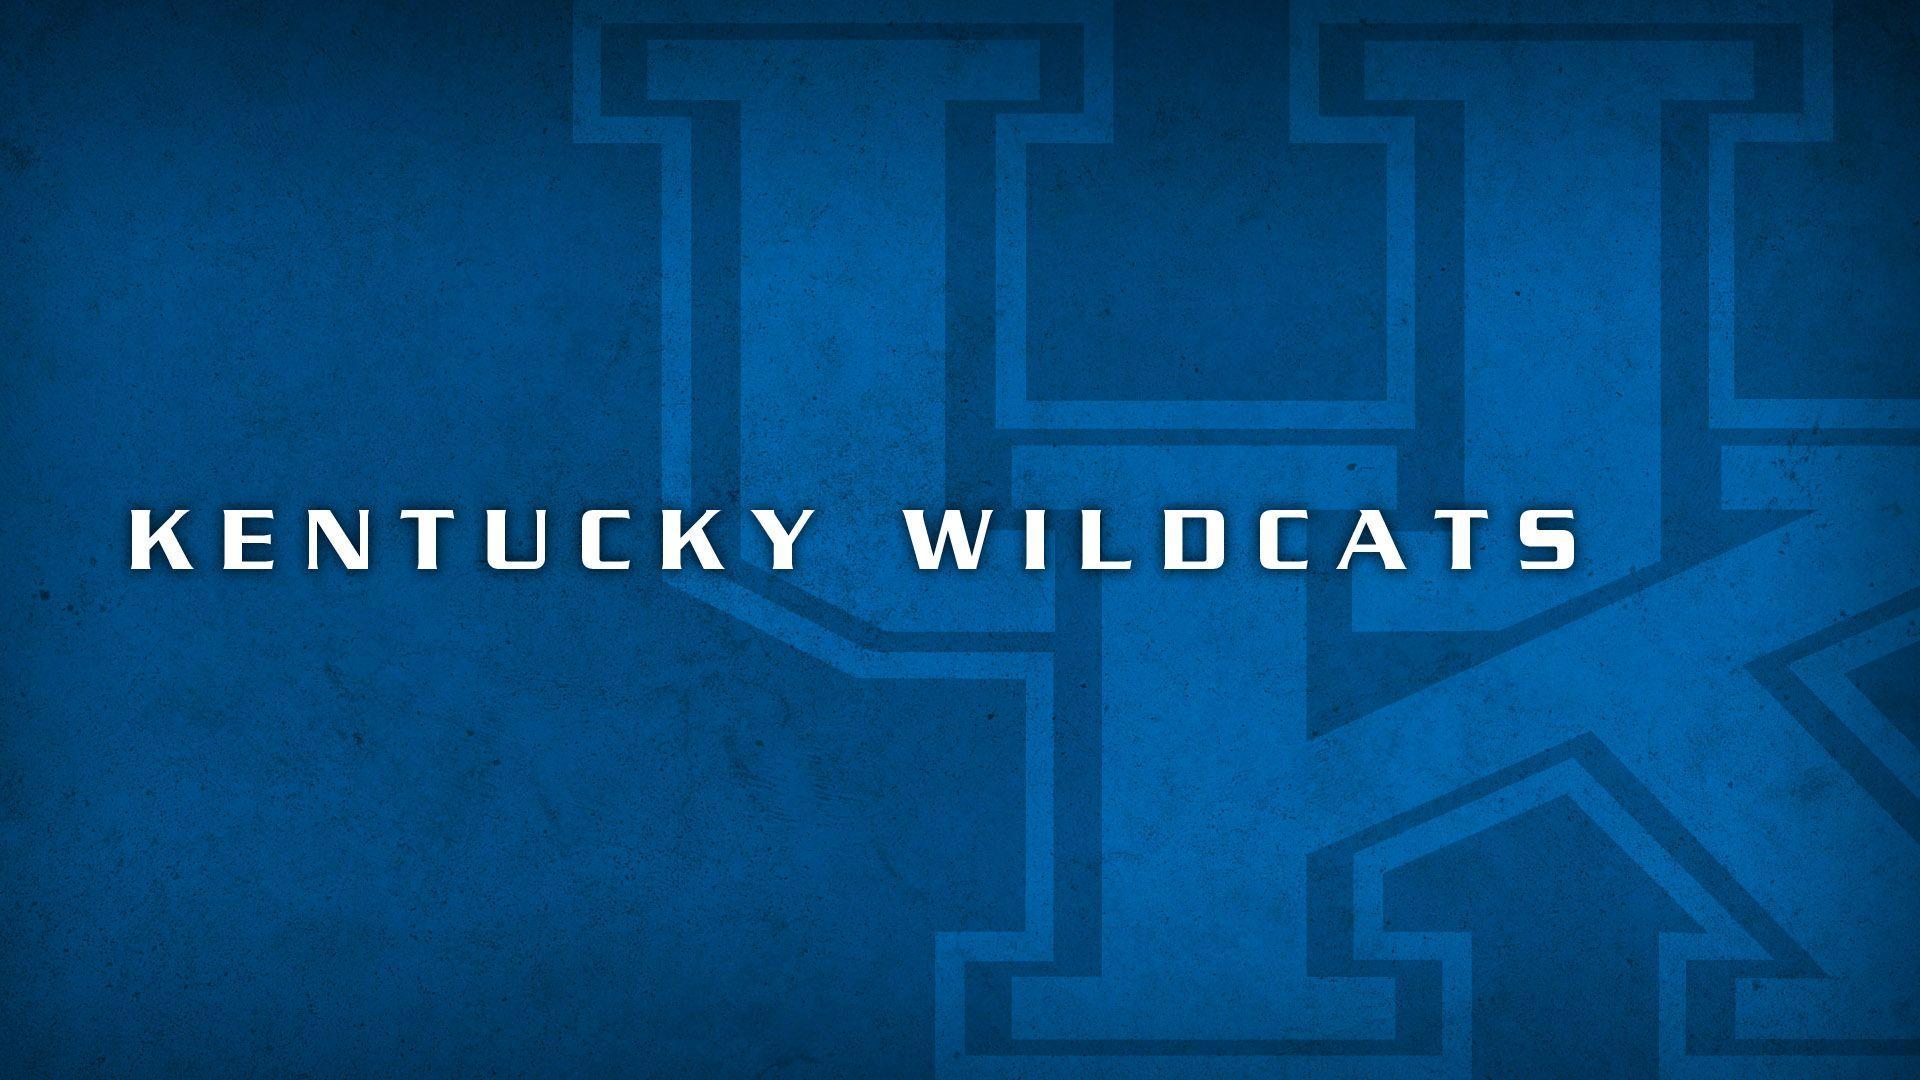 Kentucky Wildcat Desktop Wallpapers